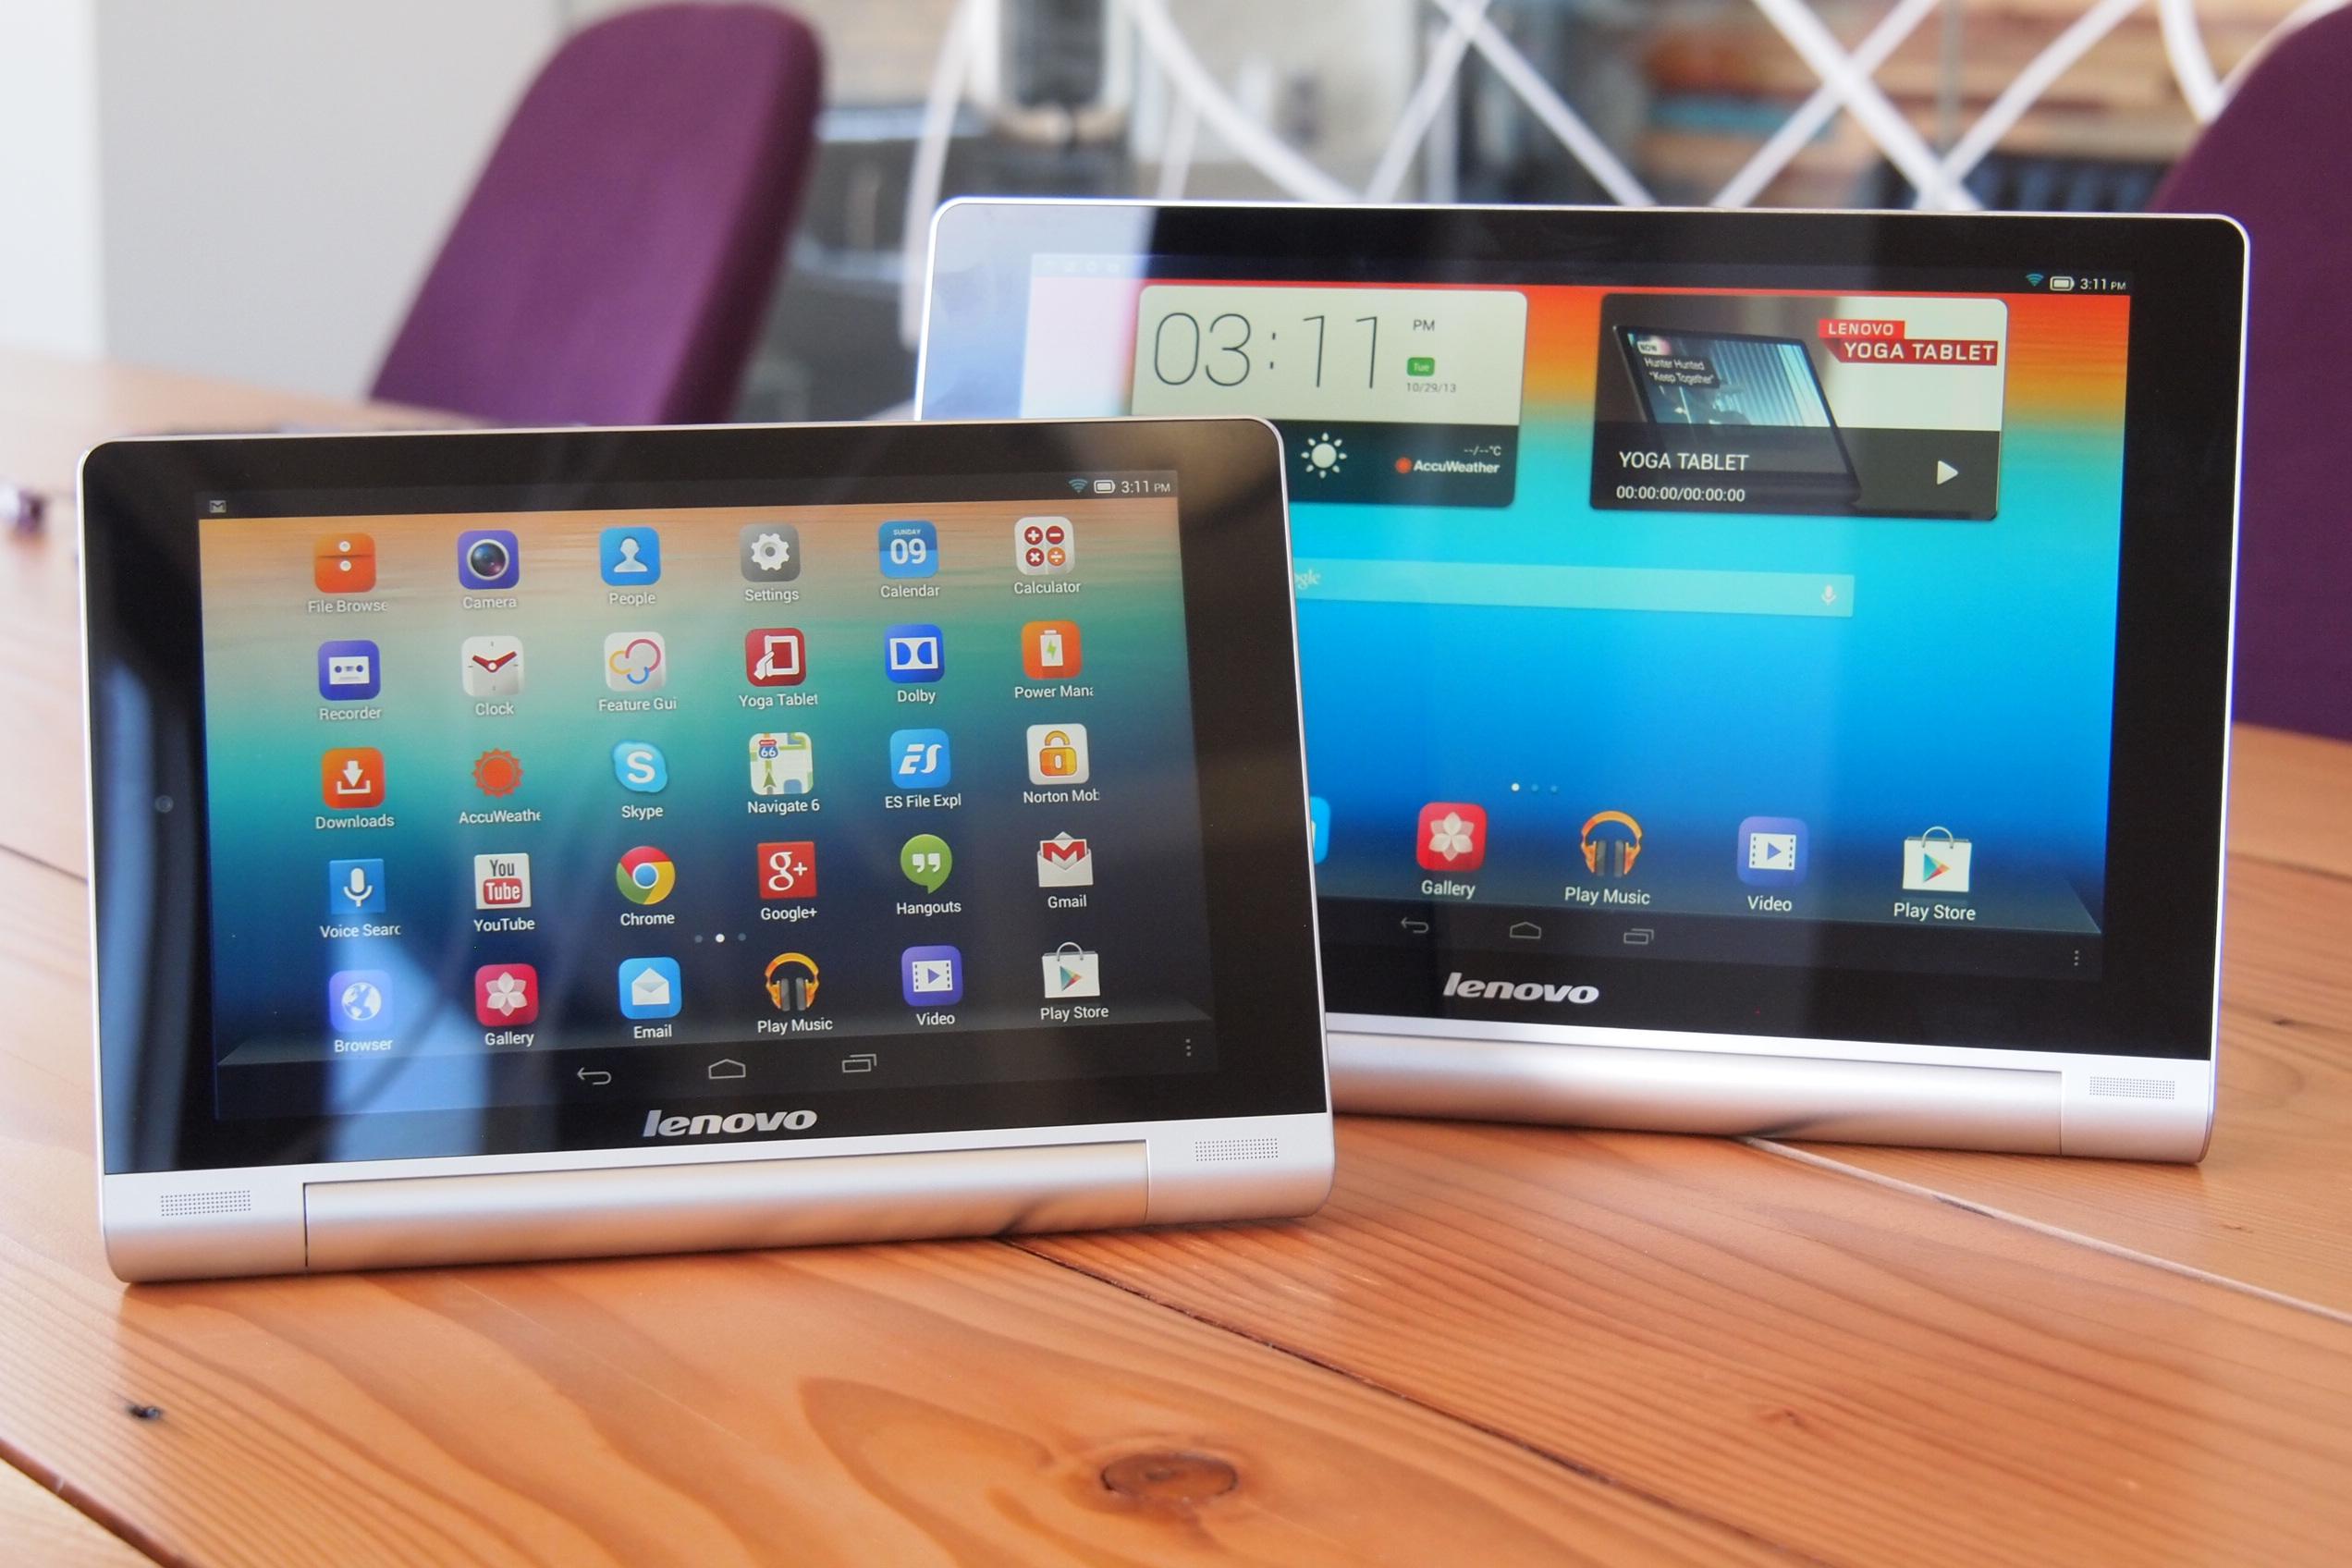 Lenovo Yoga Tablet 8 review: Unique, sturdy design can't match subpar  screen - CNET